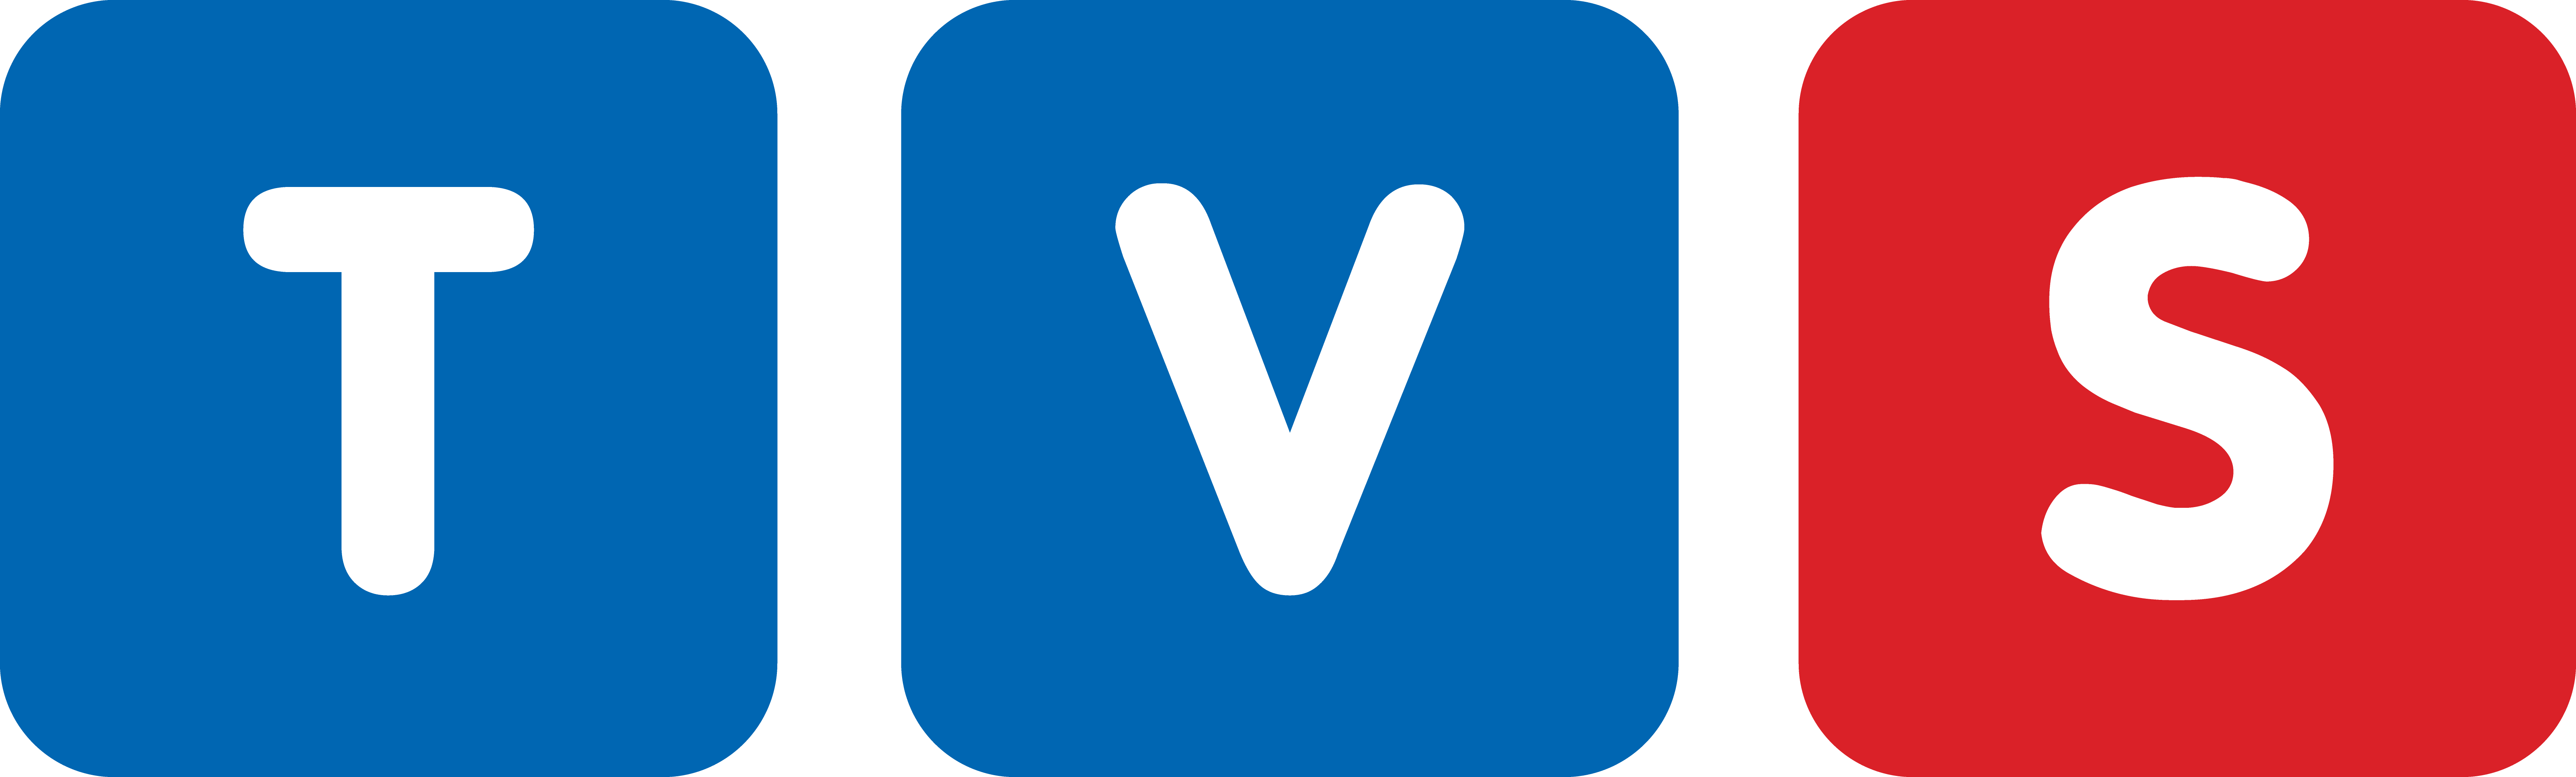 TVS logo.png